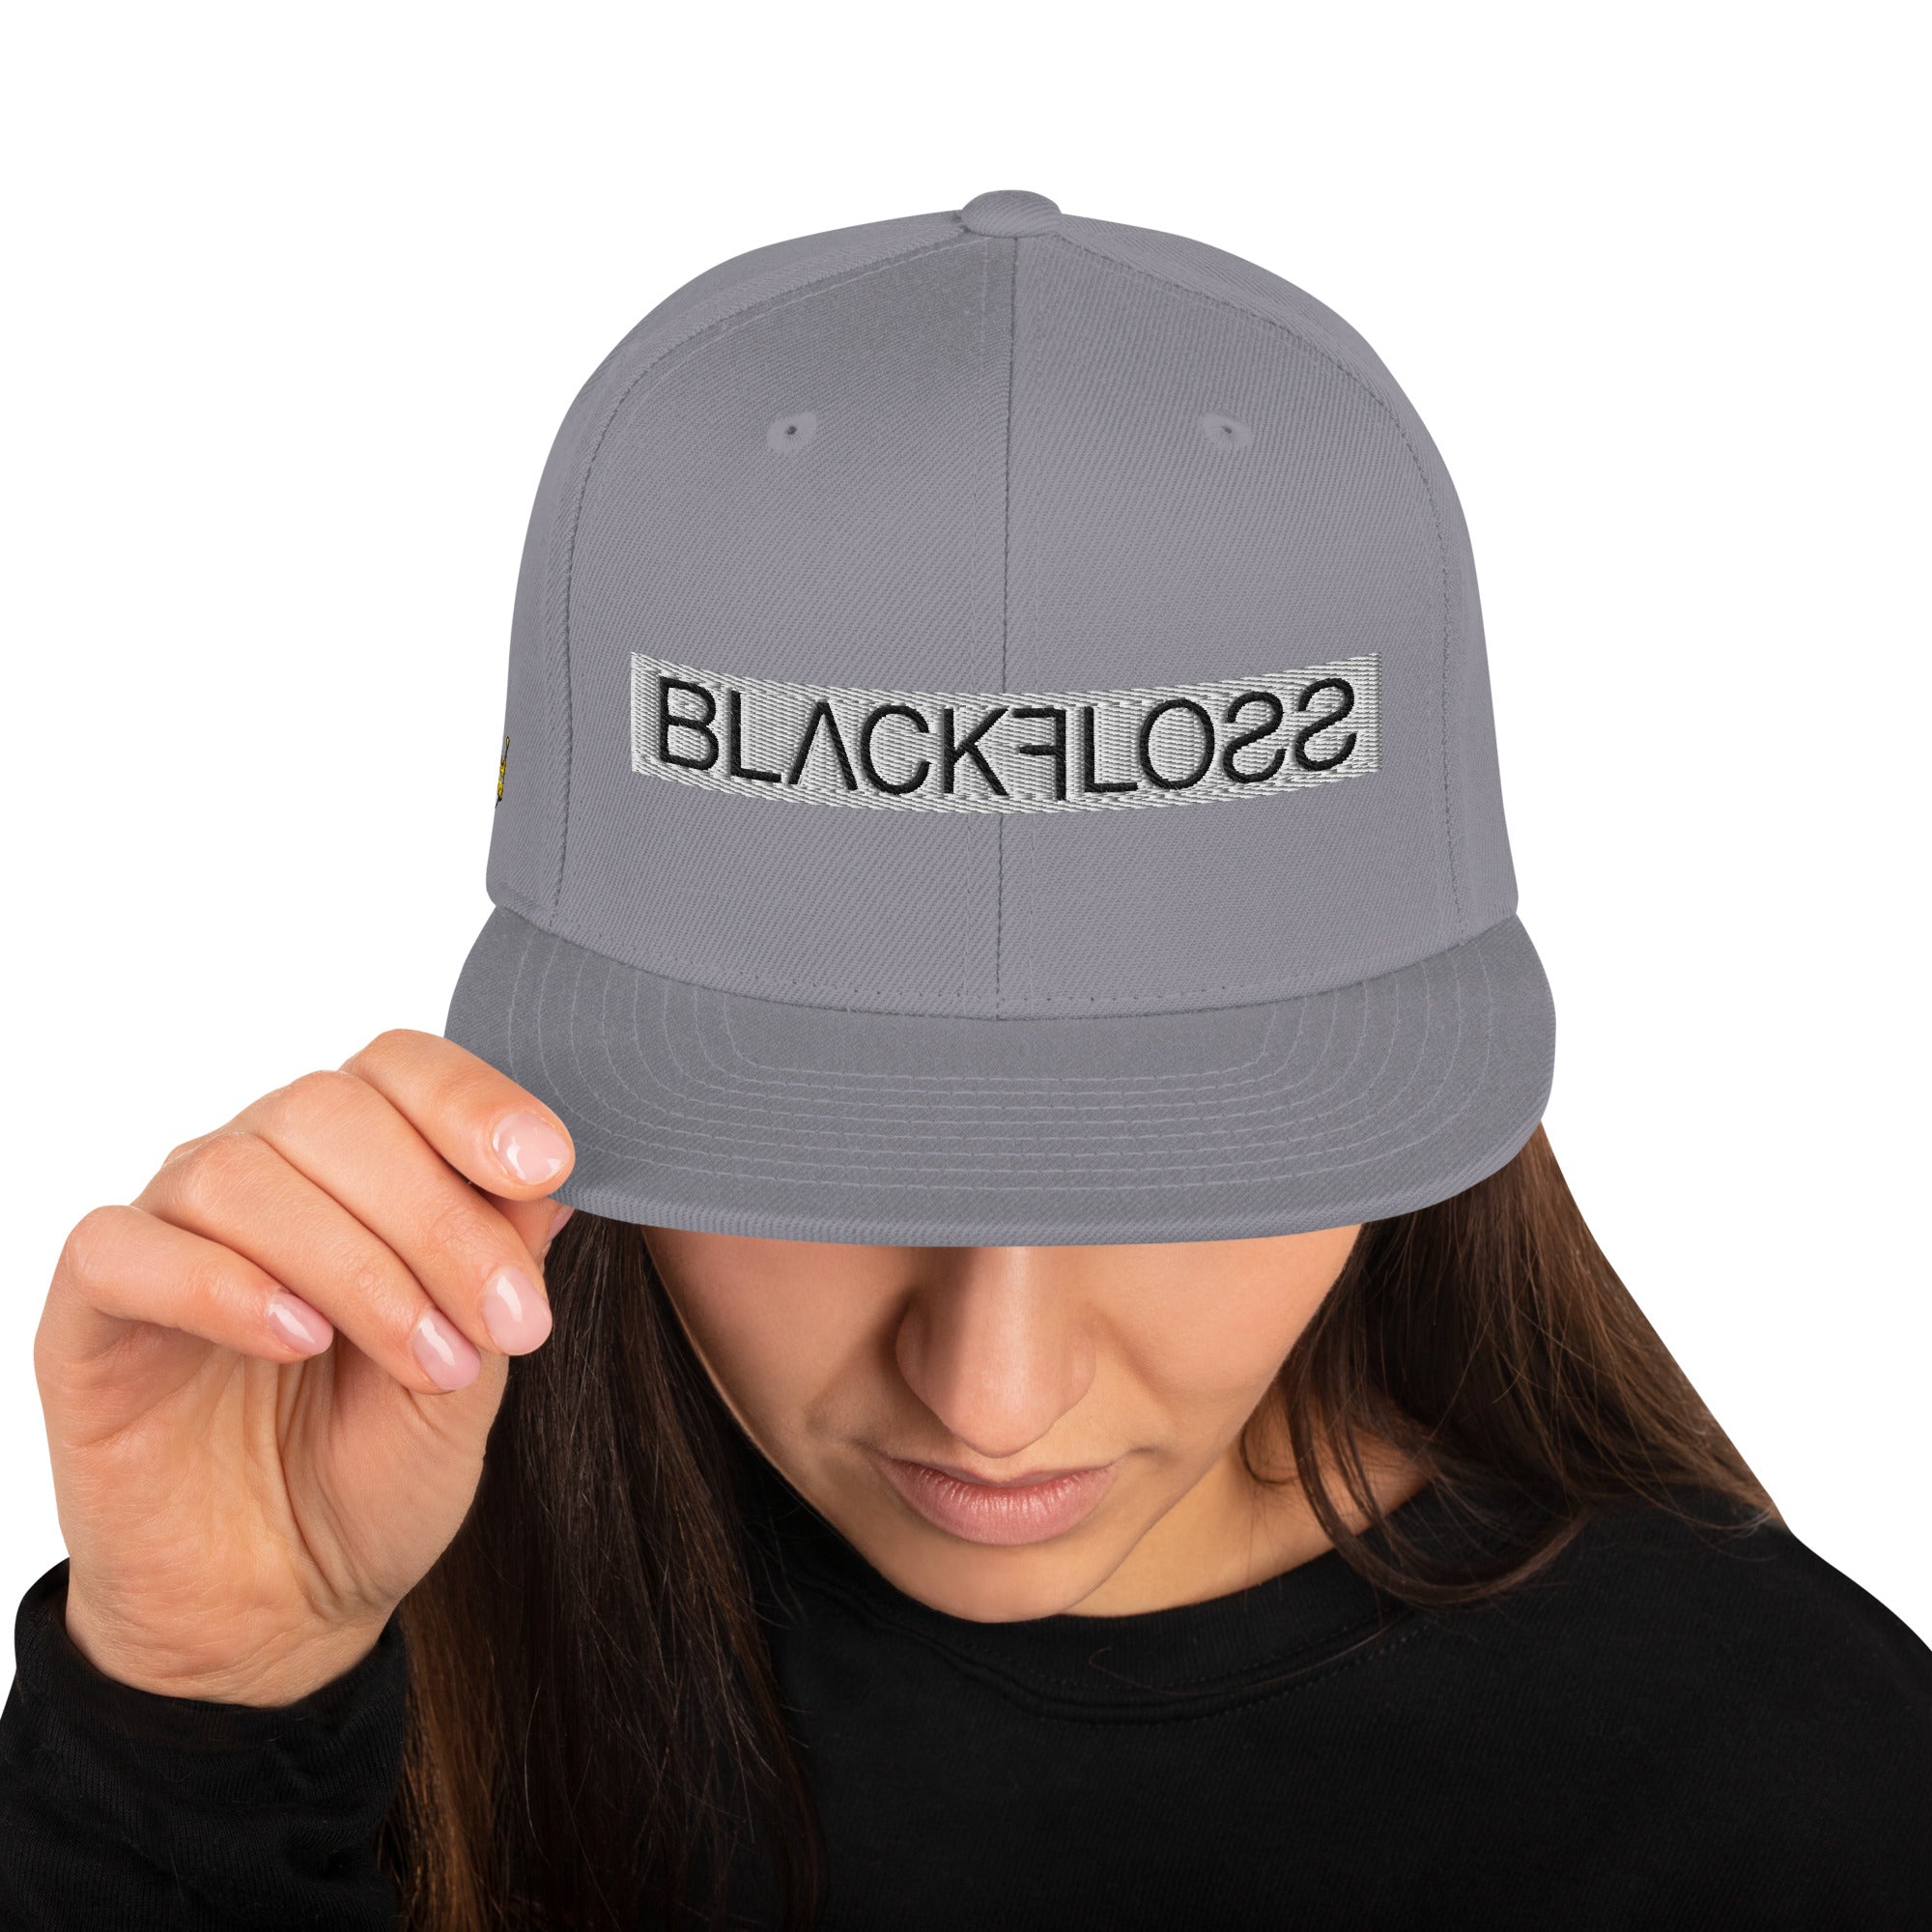 Blackfloss Snapback Hat